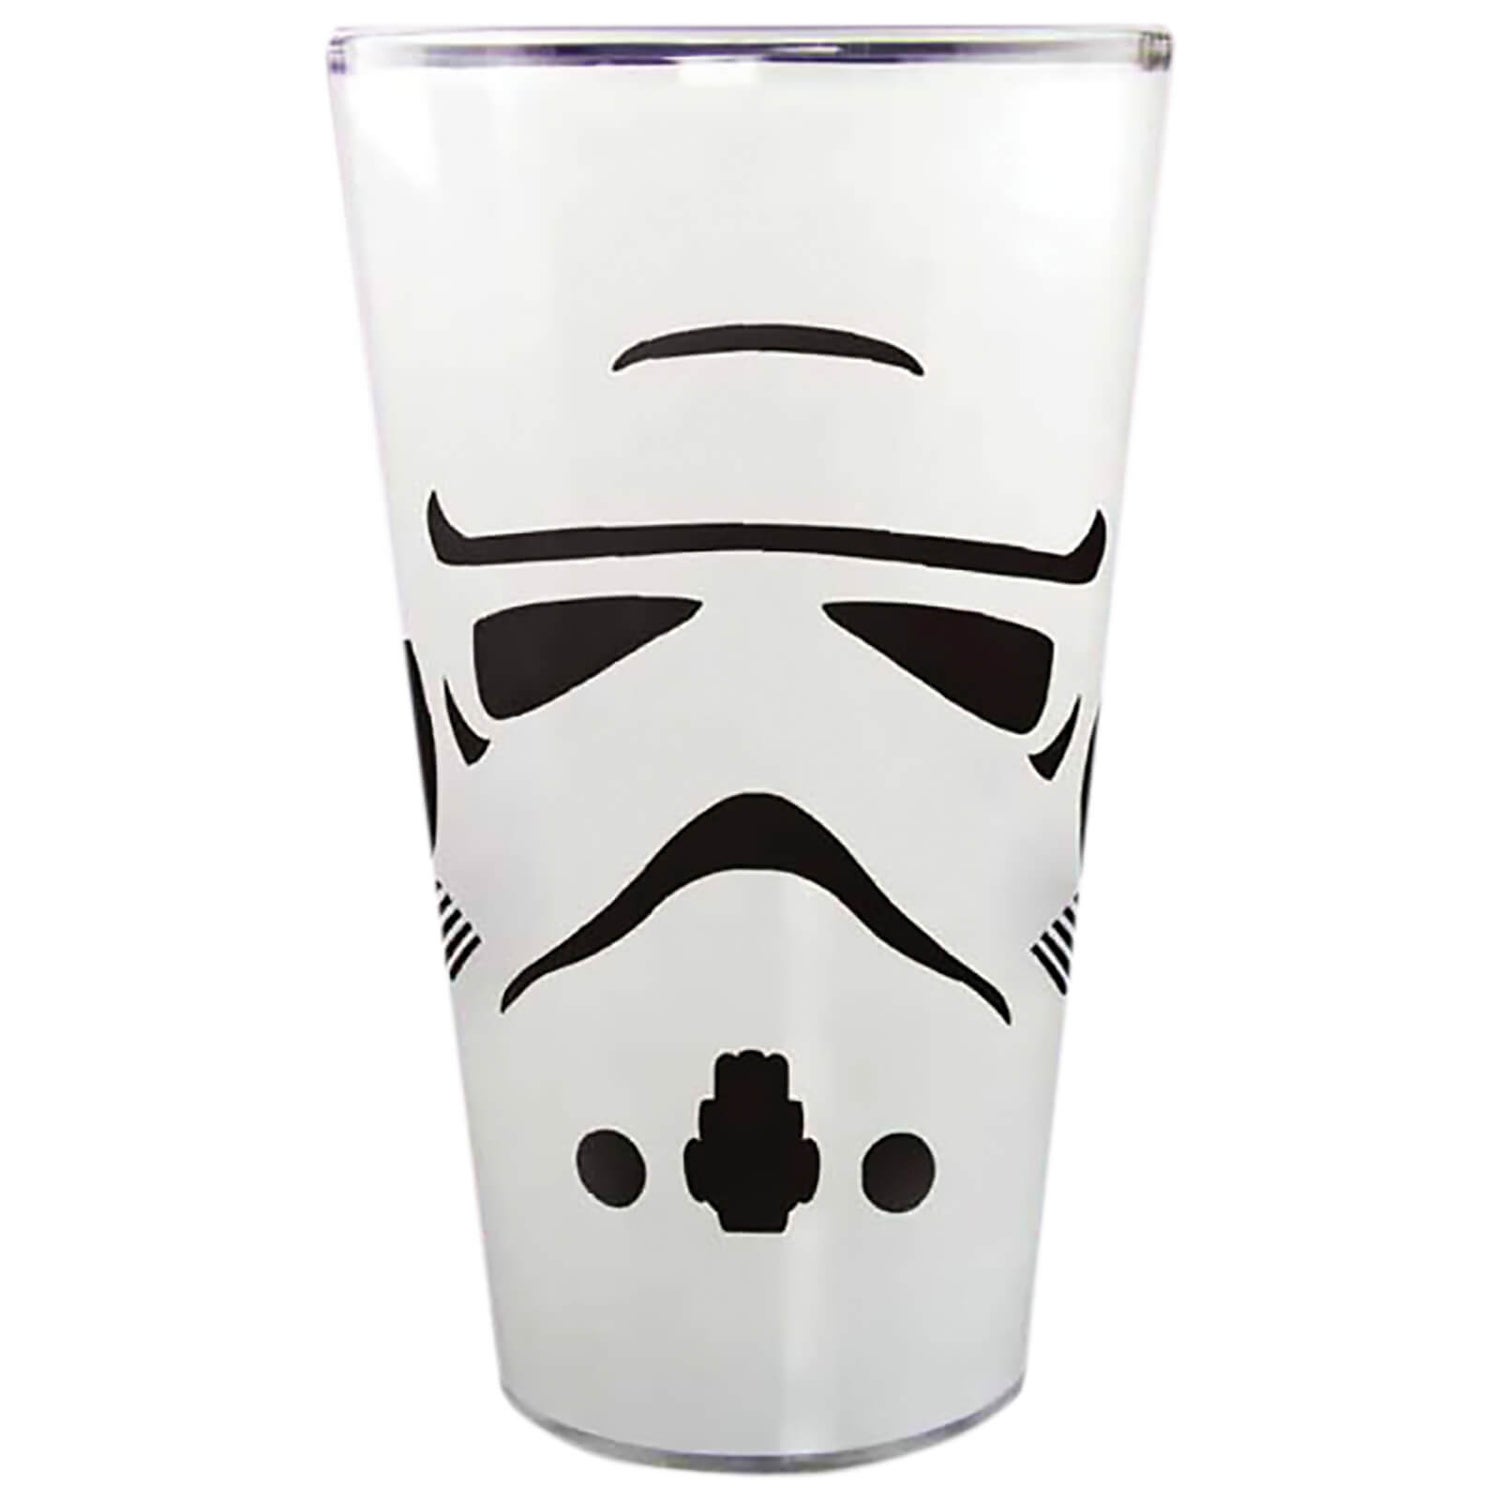 Star Wars Original Stormtrooper Glass Tumbler